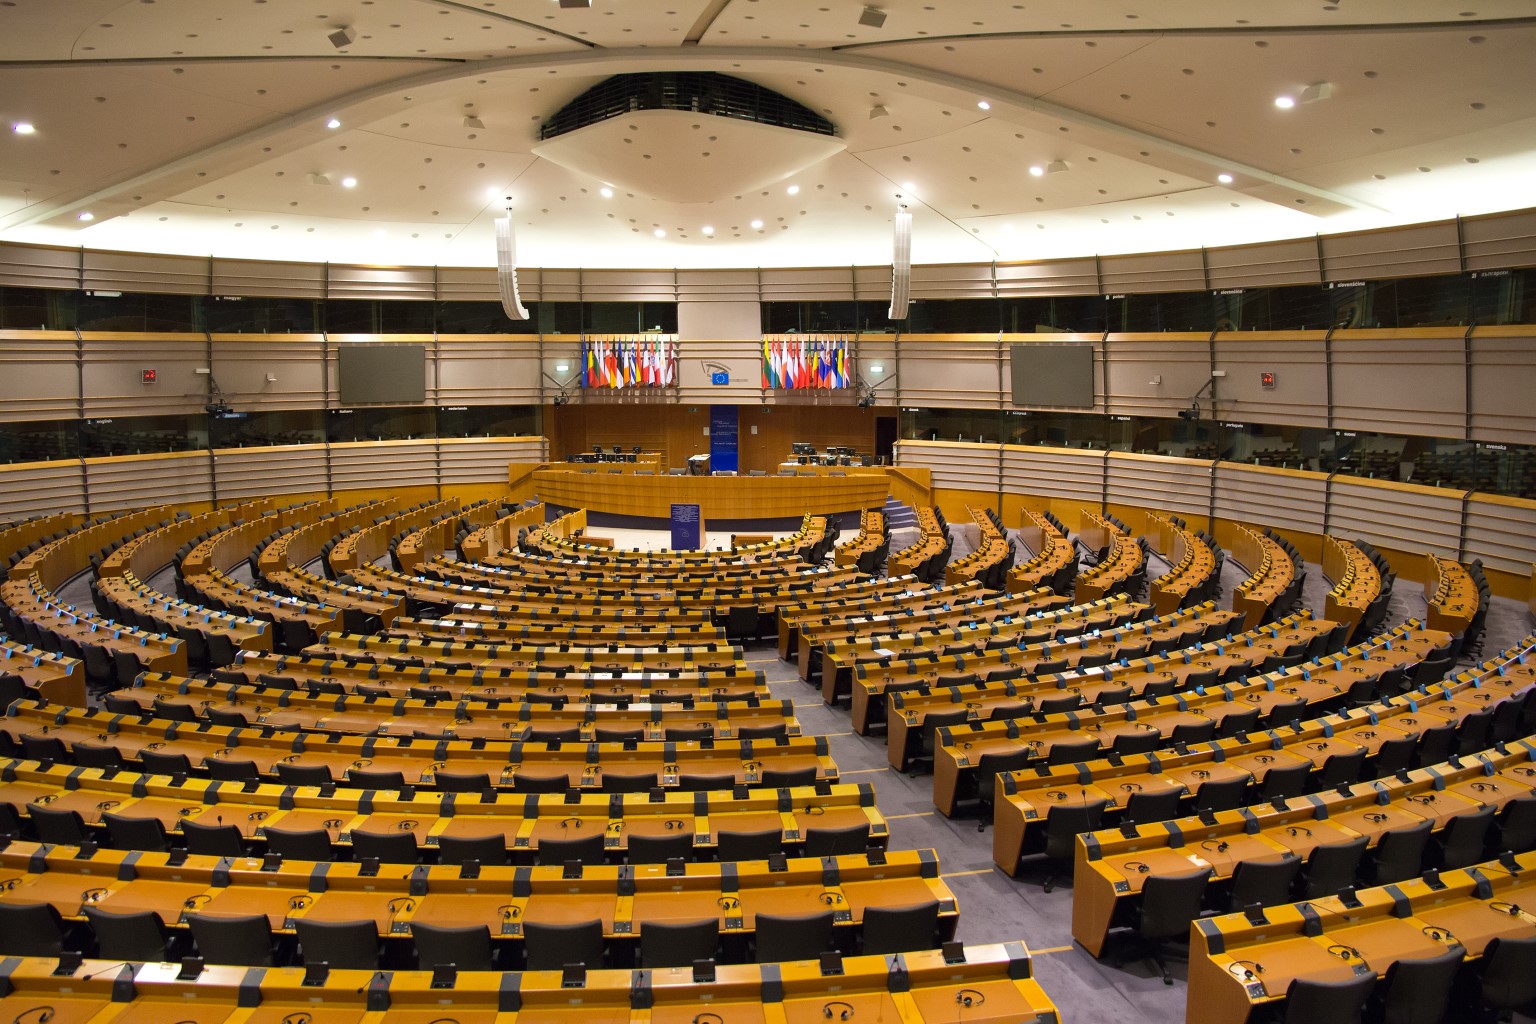 European-Parliament.jpg